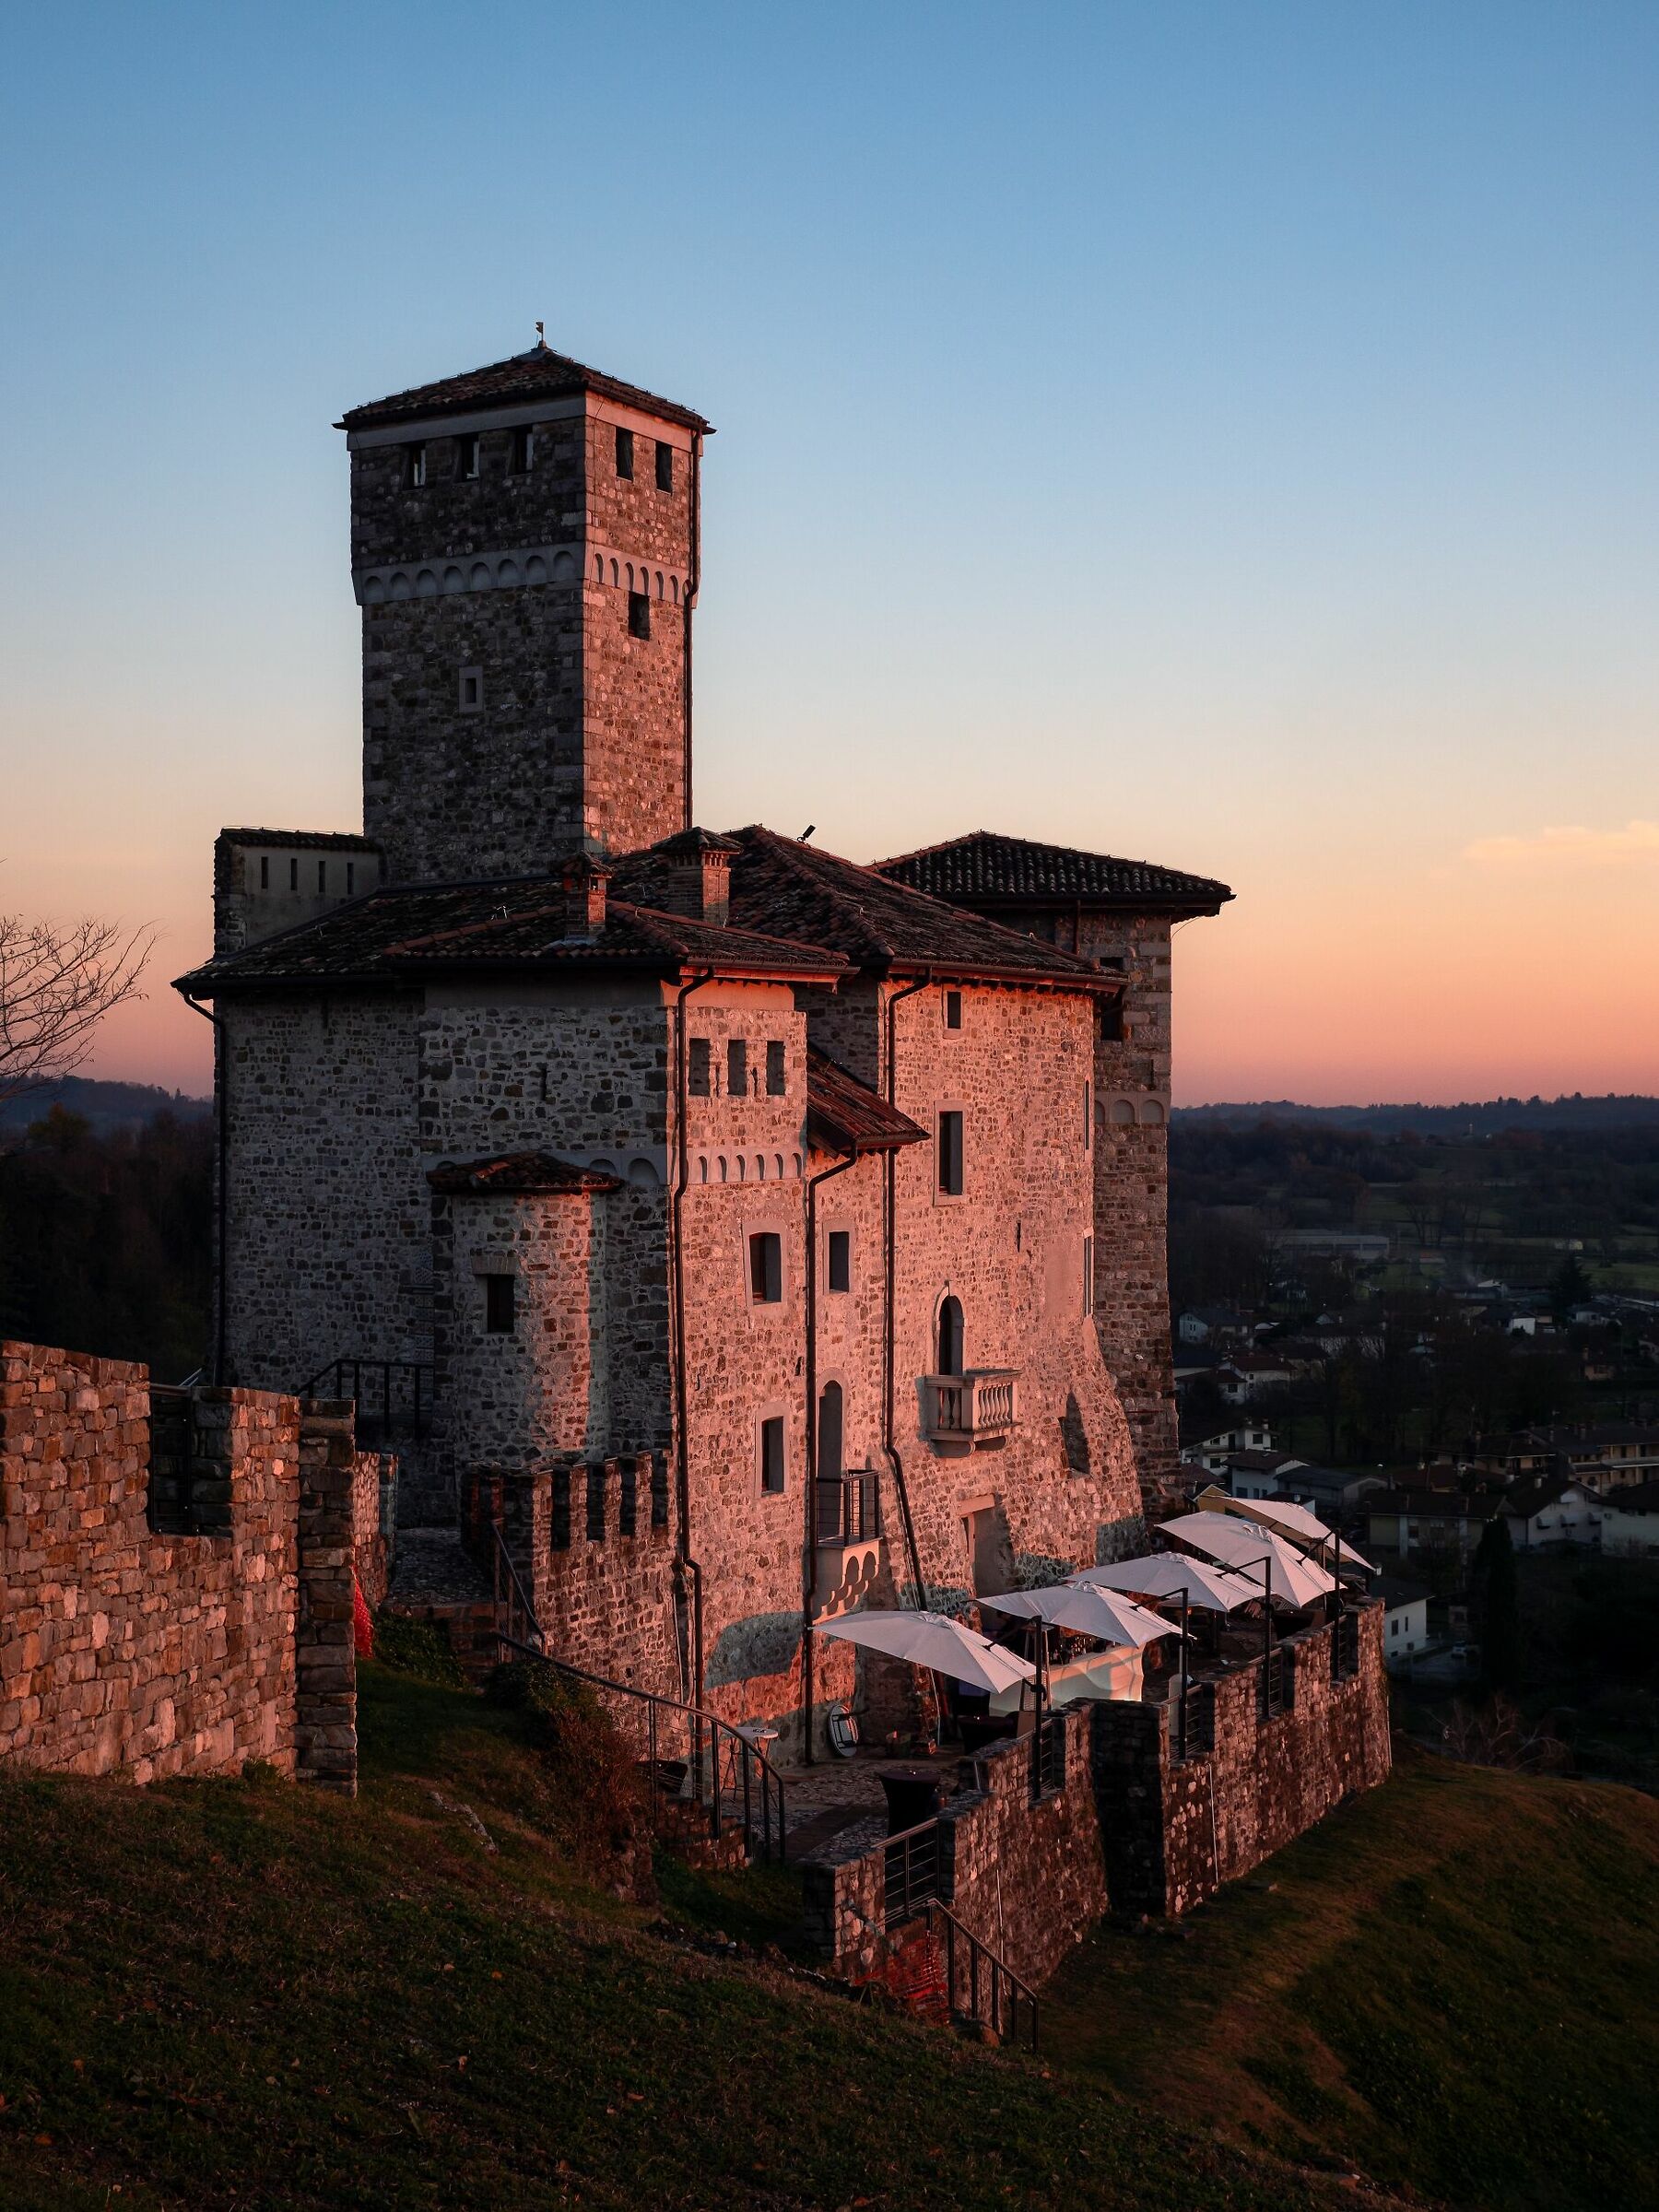 Castello Savorgnan di Artegna#2 - Friuli Venezia Giulia...